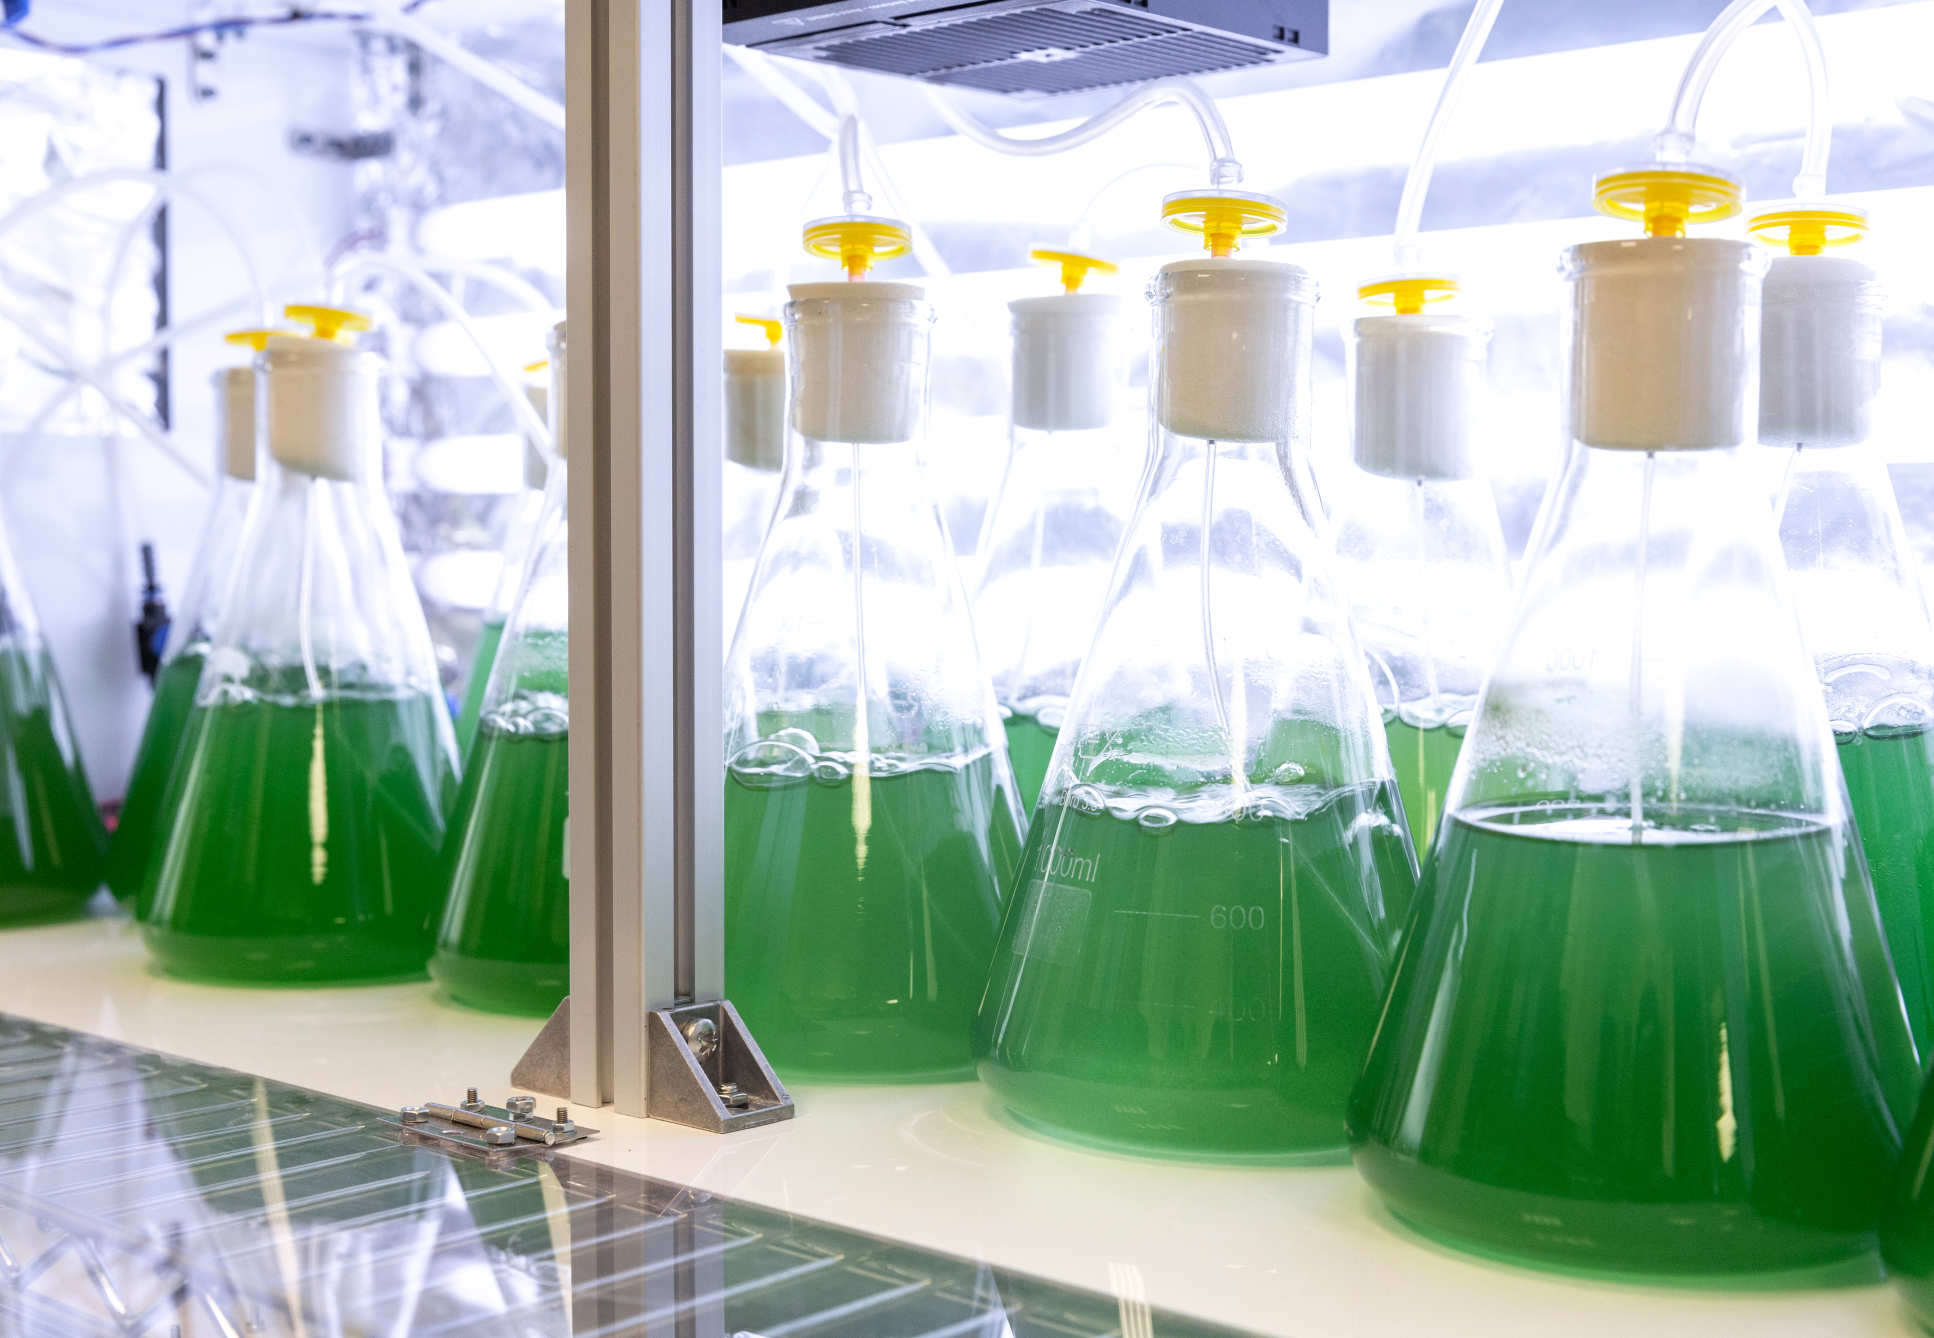 Algae in glass bottles